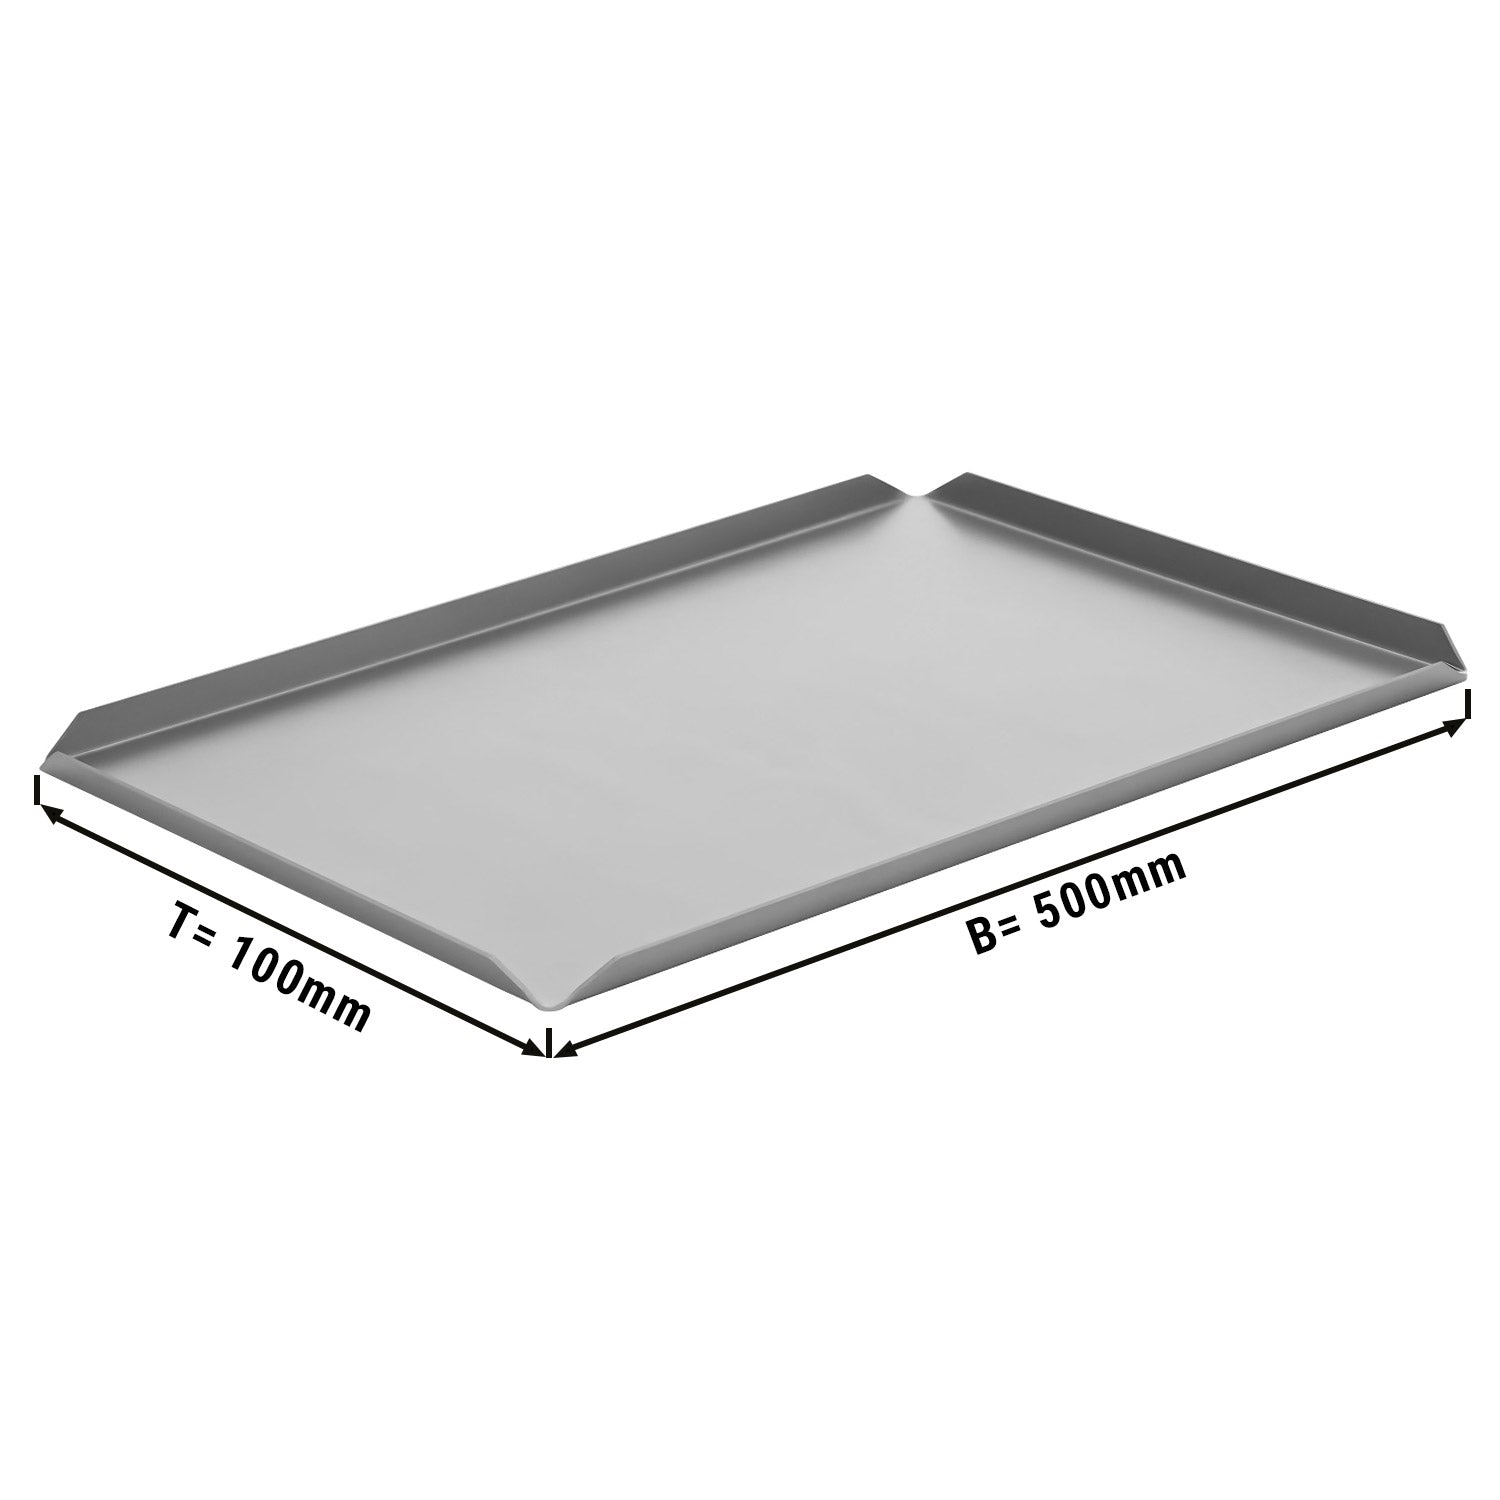 (5 stk.) Konfekture/ & præsentationsplade af aluminium - 500 x 100 x 10 mm - aluminium